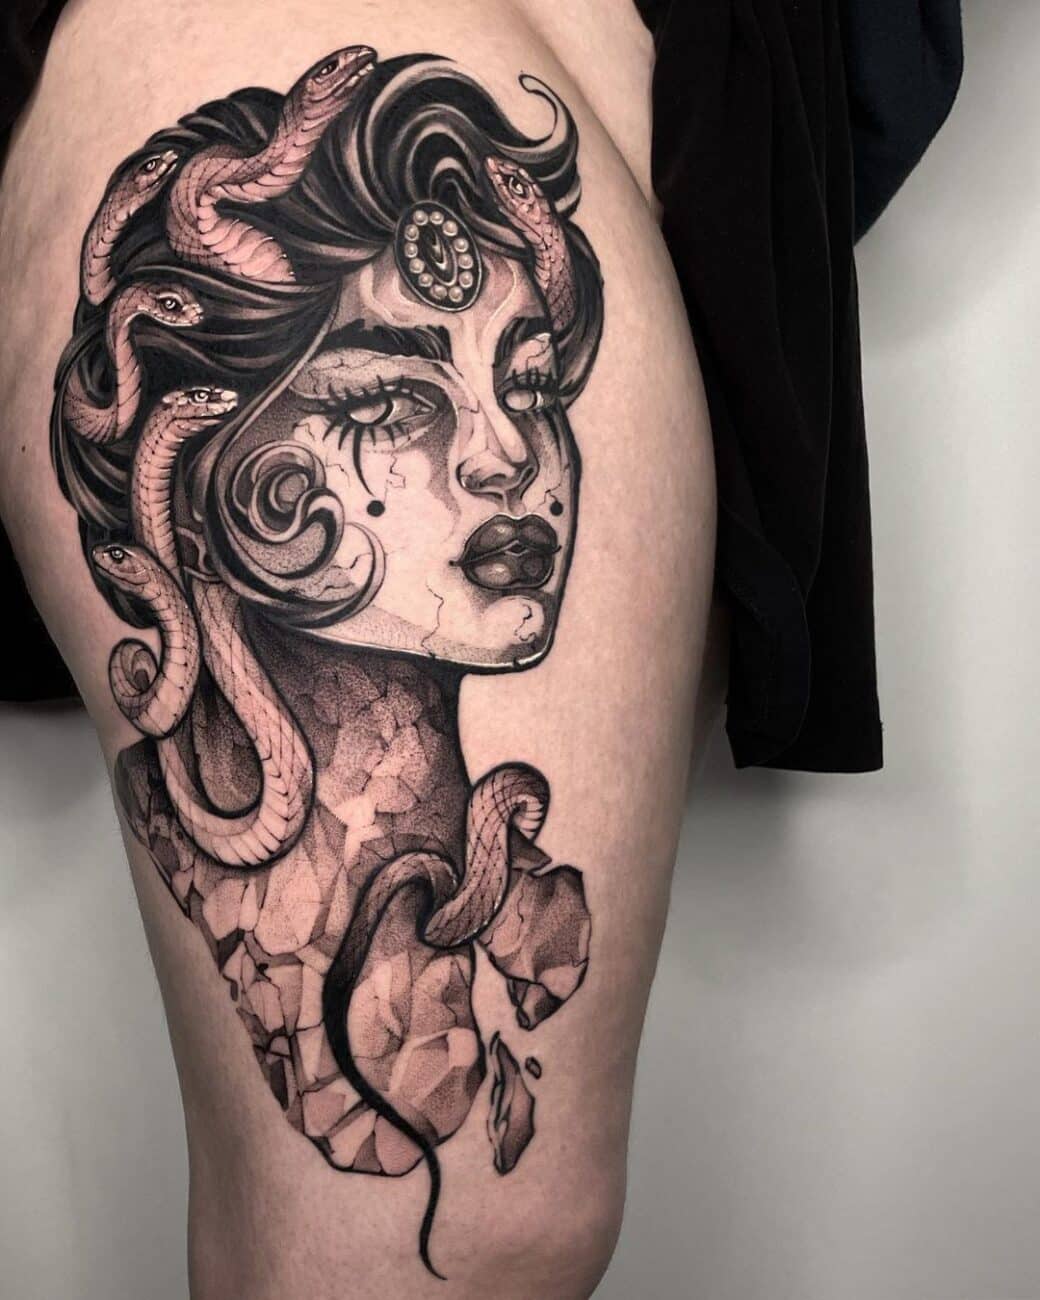 medusa-tattoo-pin-up-sailors-ink